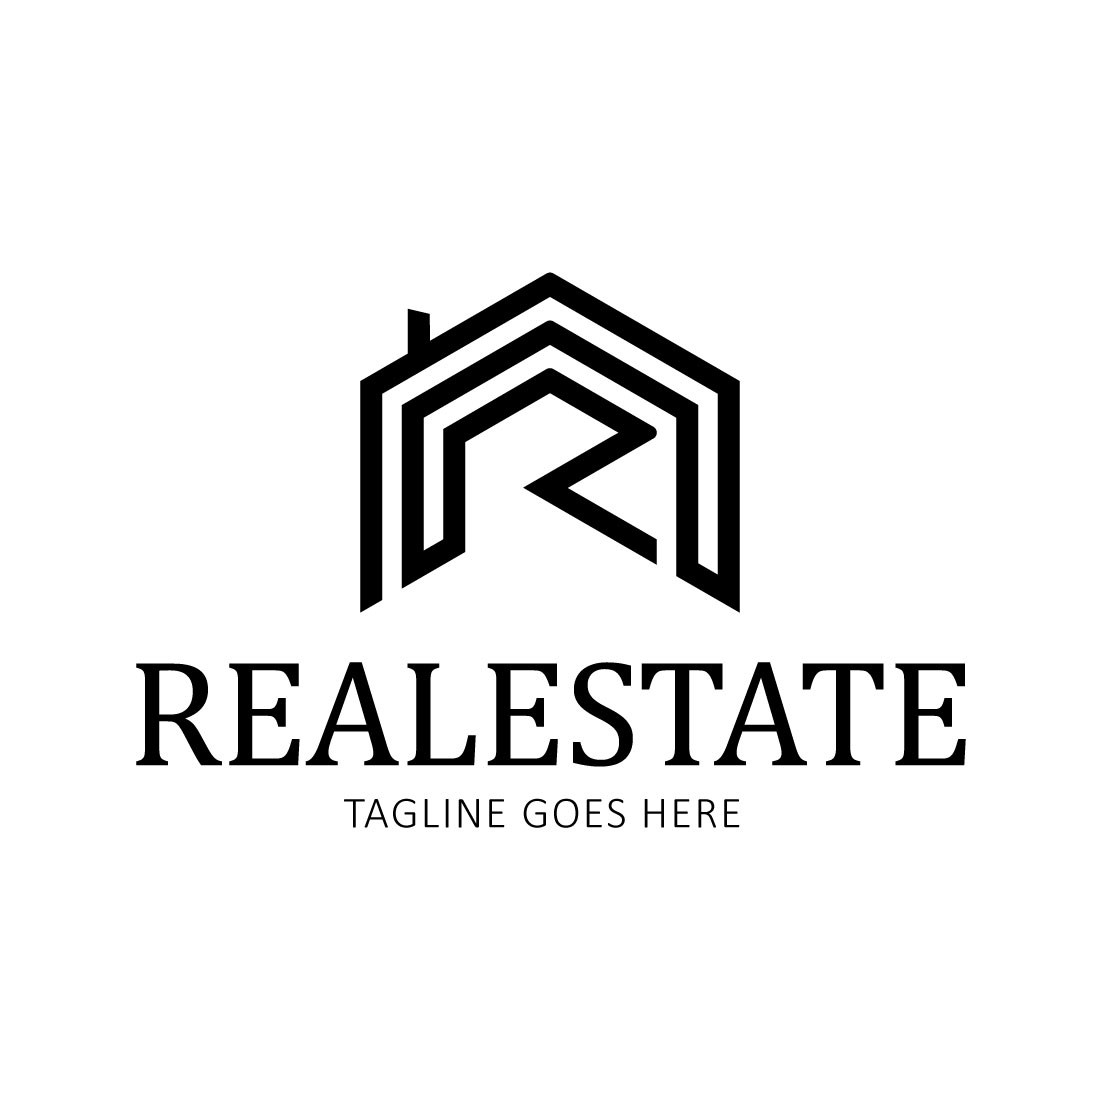 Home Real Estate Logo Black Grey Design facebook image.